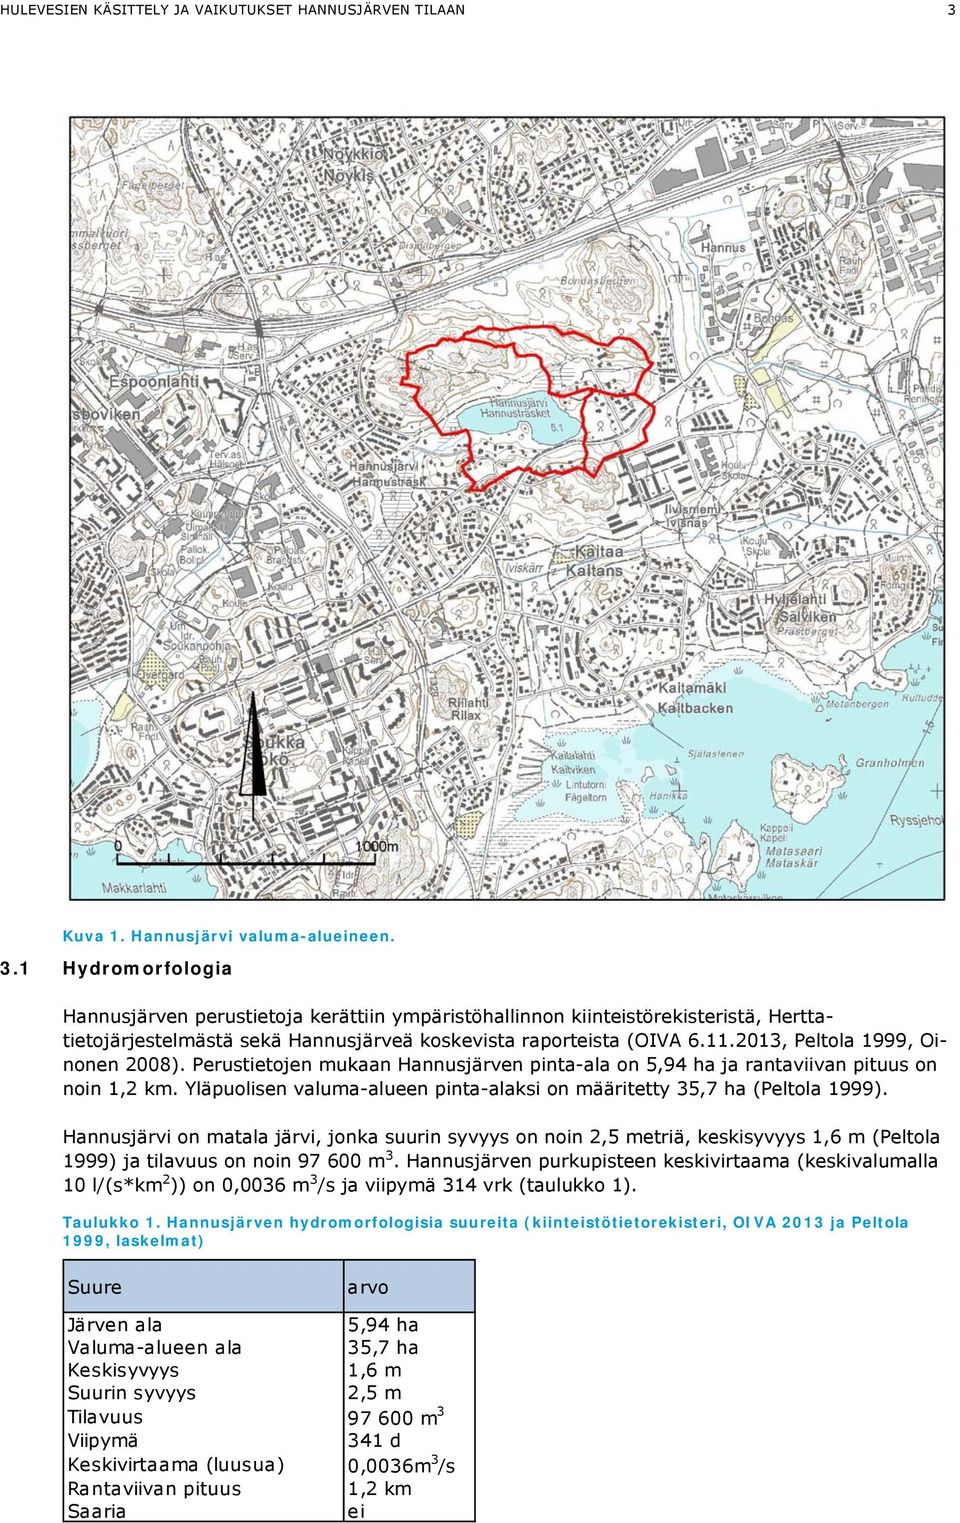 1 Hydromorfologia Hannusjärven perustietoja kerättiin ympäristöhallinnon kiinteistörekisteristä, Herttatietojärjestelmästä sekä Hannusjärveä koskevista raporteista (OIVA 6.11.